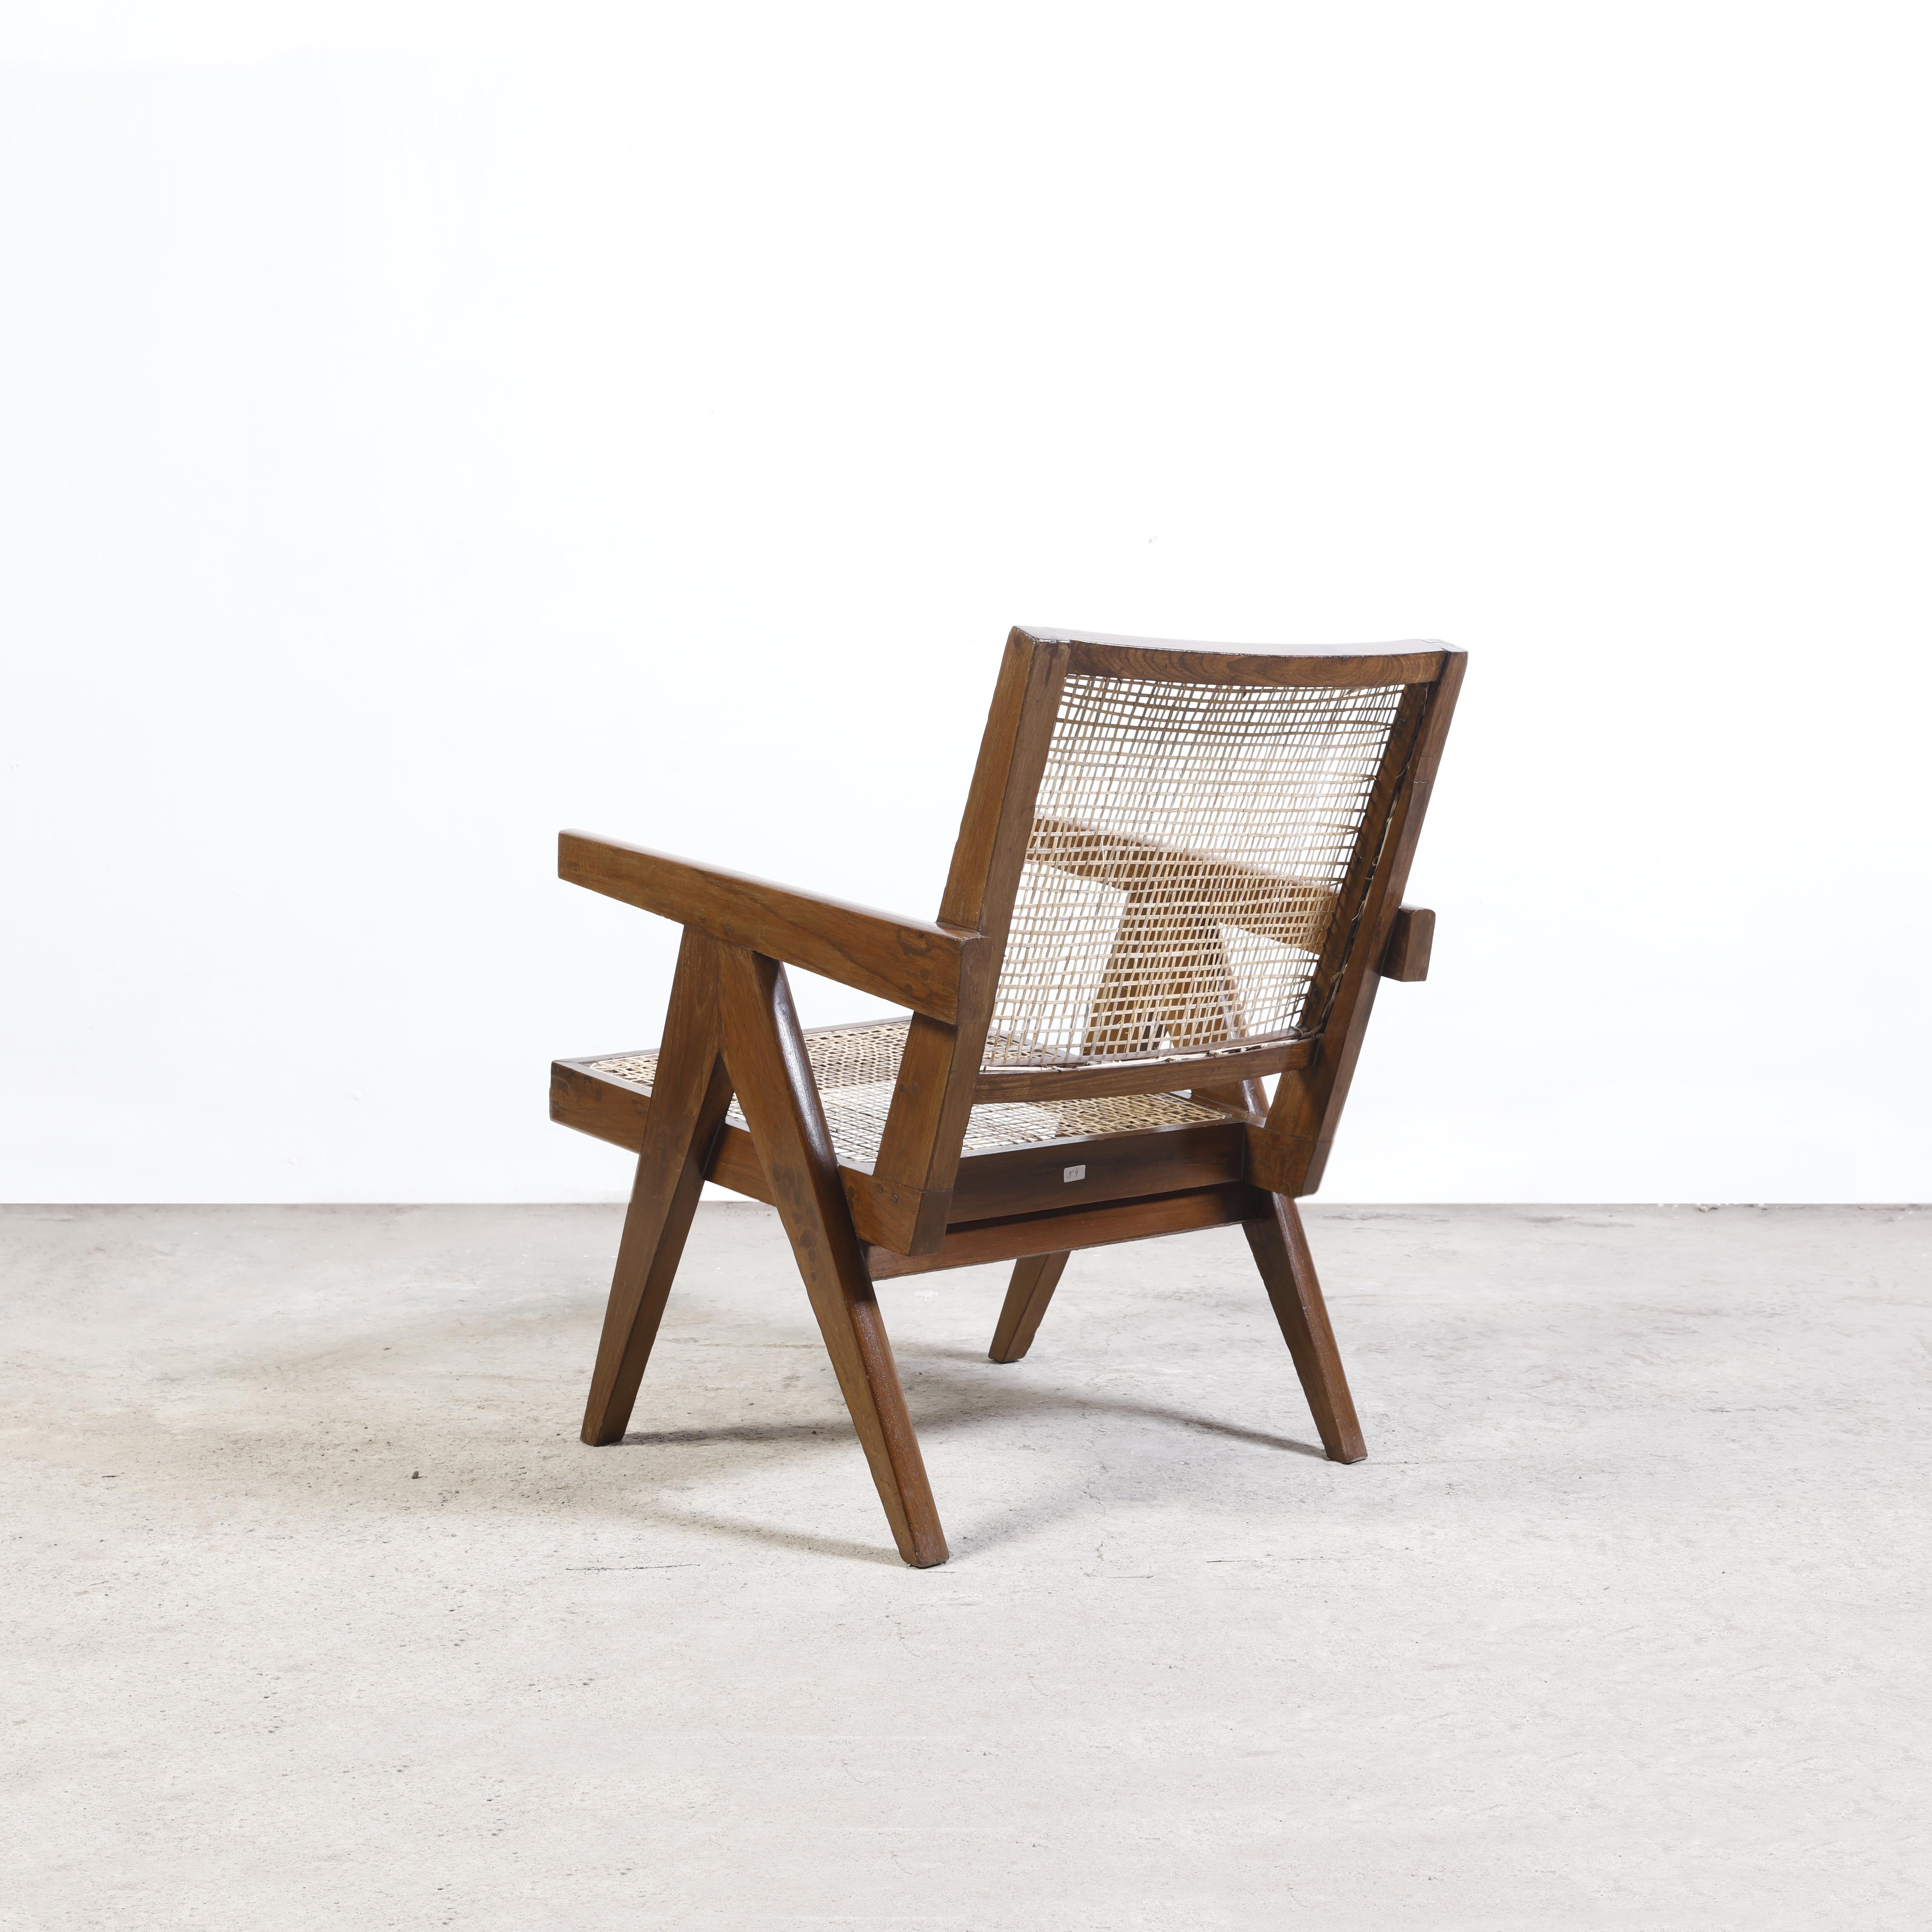 Dieser Sessel ist ein fantastisches Stück; endlich ist er ikonisch. Es ist roh in seiner Einfachheit, nicht zu viel und doch fehlt nichts. Die A-förmigen Beine sind charakteristisch für den Entwurf von Pierre Jeanneret für Chandigarh und auf vielen